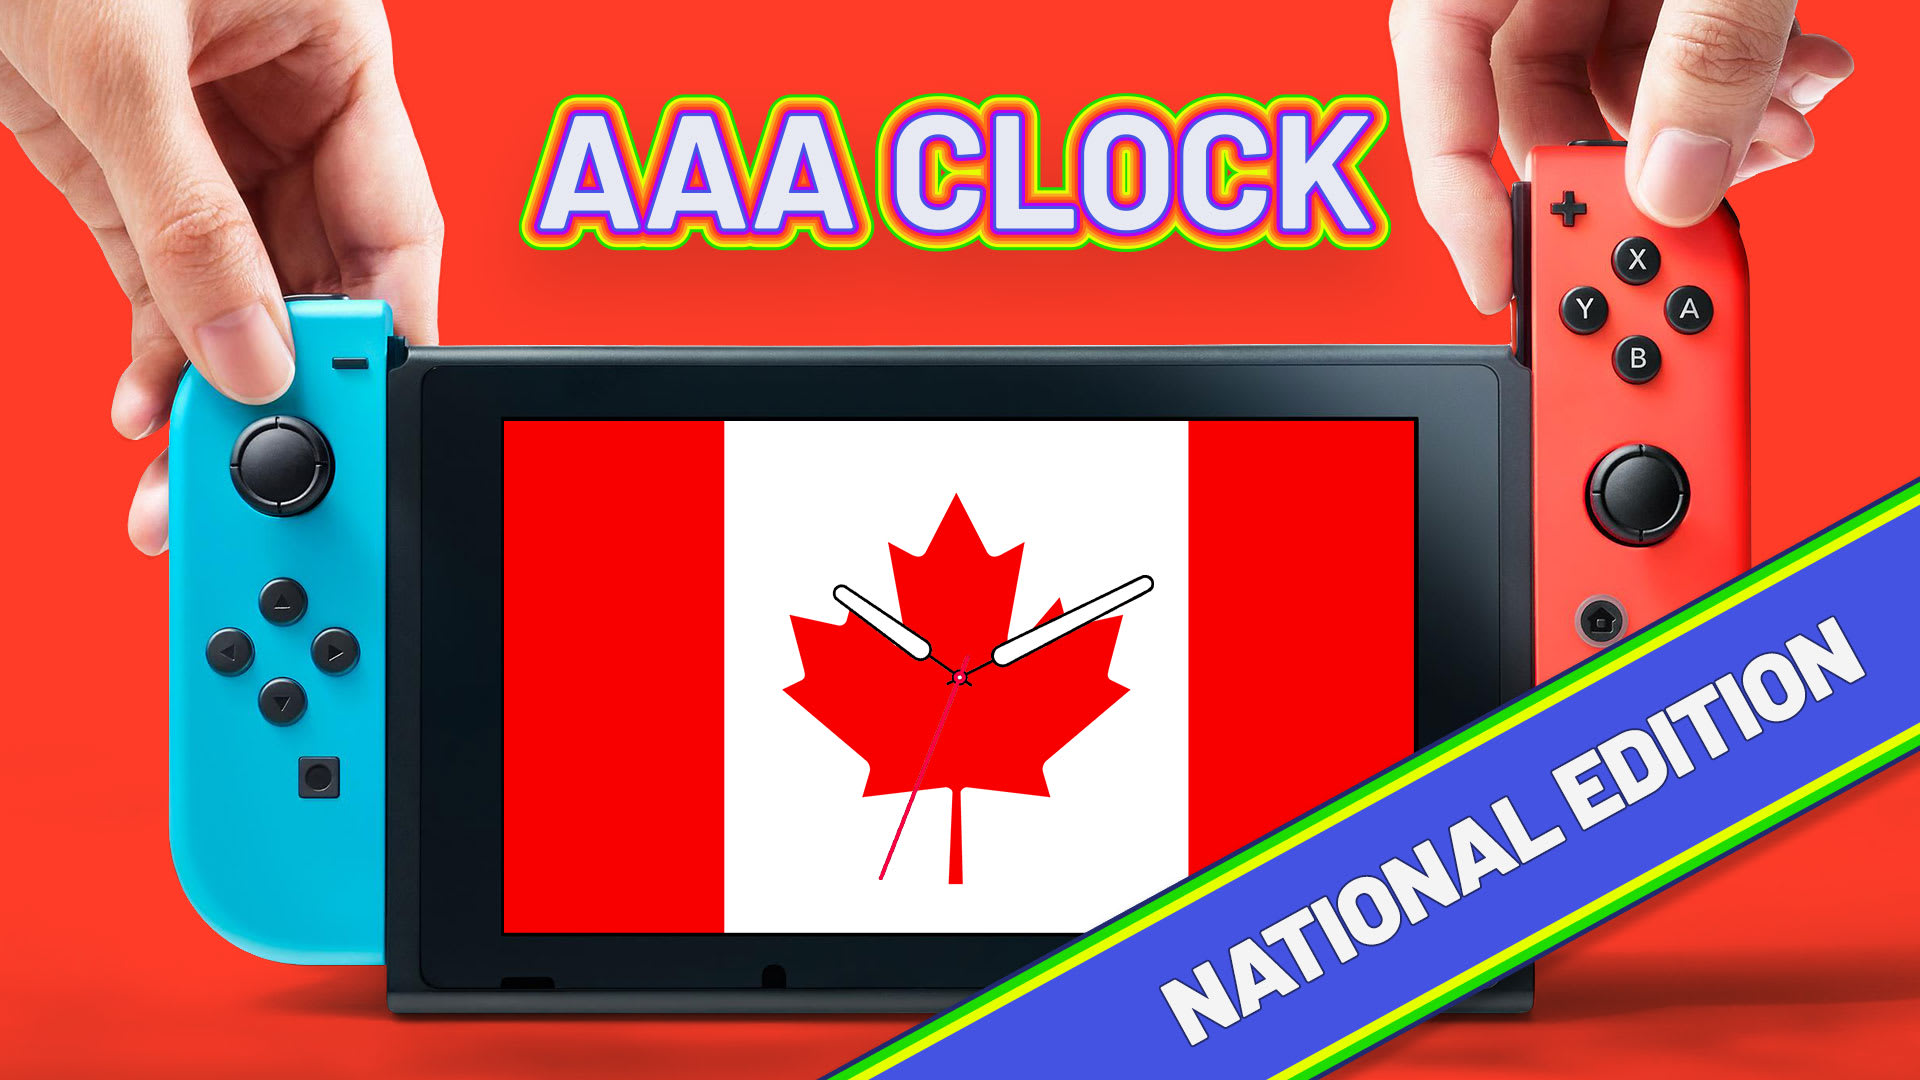 AAA Clock National Edition 1